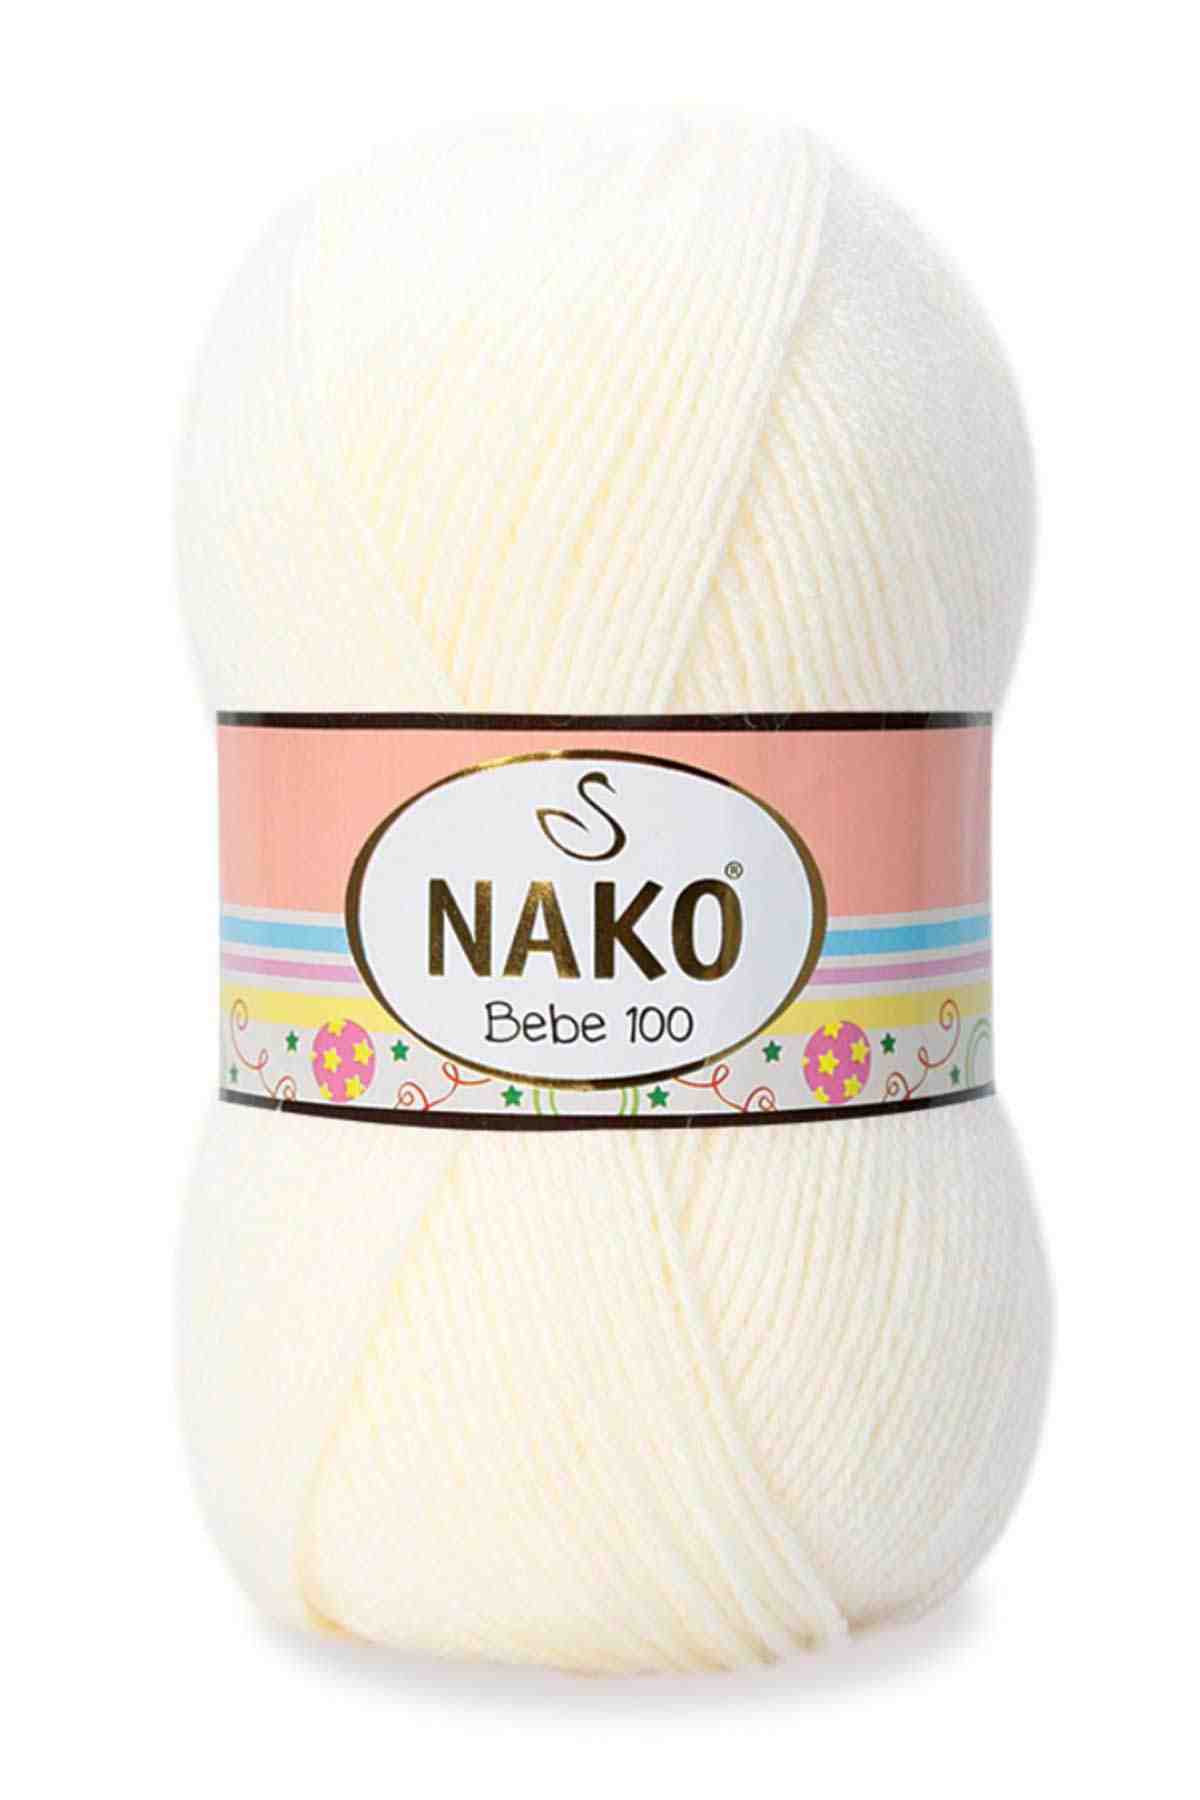 Nako Bebe 100 Acrylic Yarn